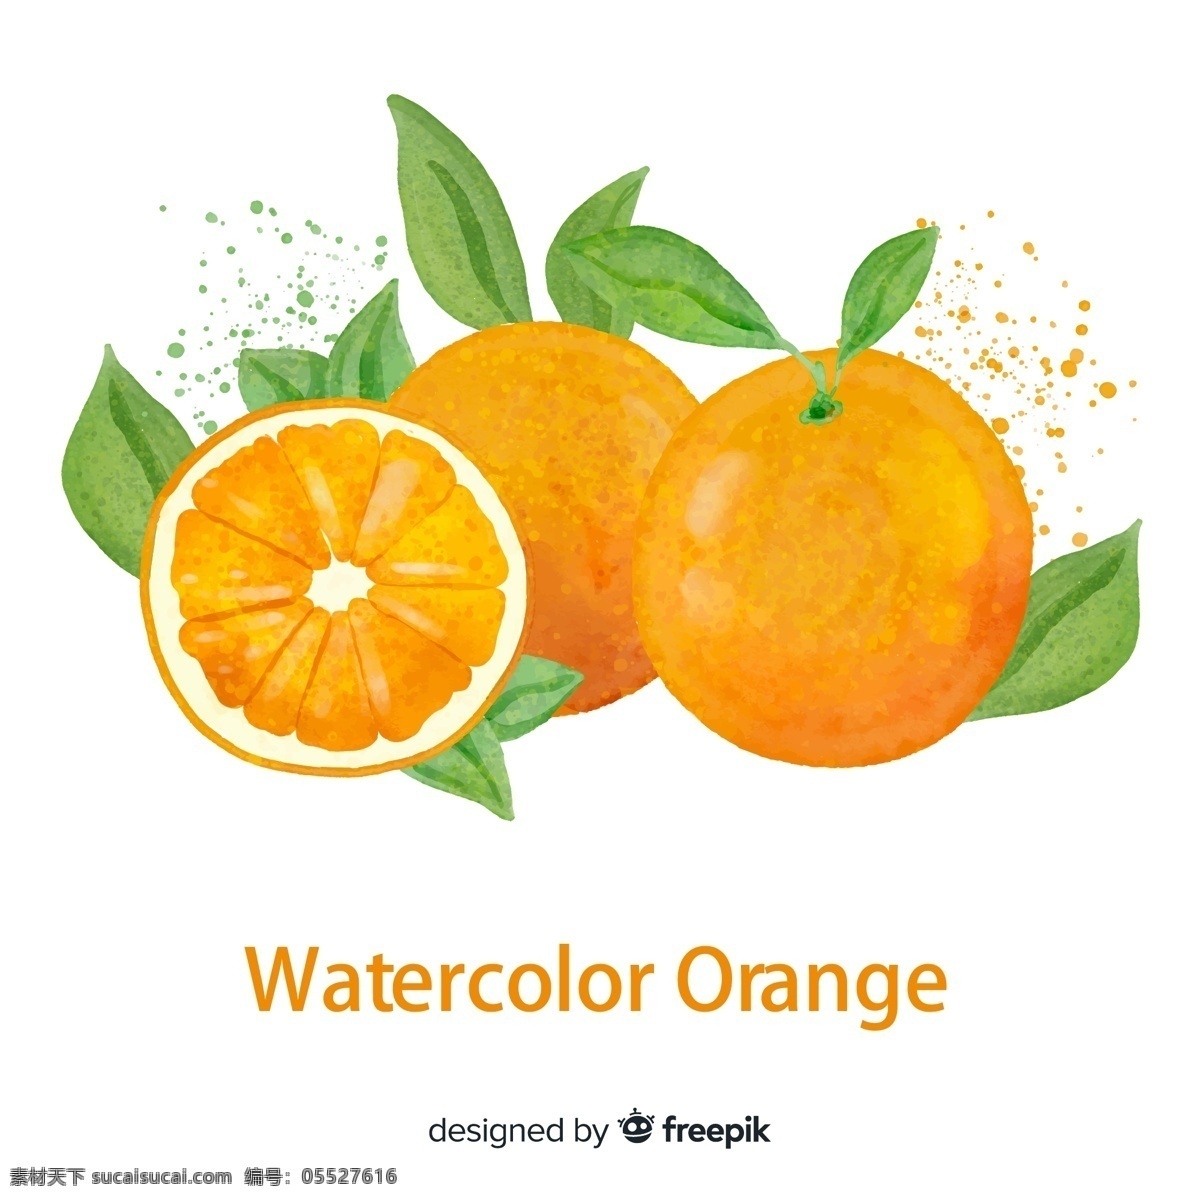 彩绘 新鲜 橙子 水果 矢量图 格式 矢量 高清图片